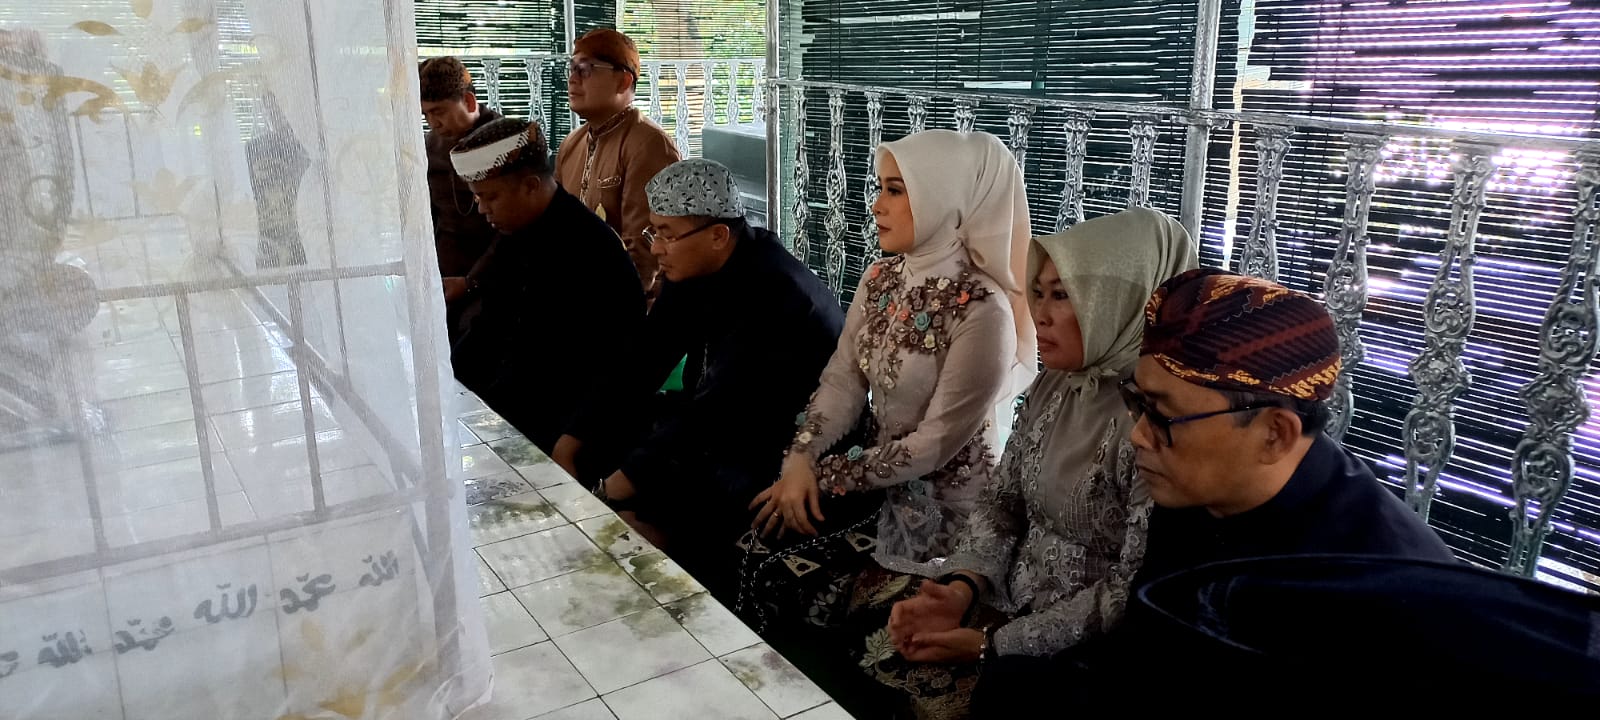 Bupati Sumedang dan rombongan melakukan ziarah kubur ke makam Dayeuh Luhur di Kecamatan Ganeas, Kabupaten Sumedang Jawa Barat.